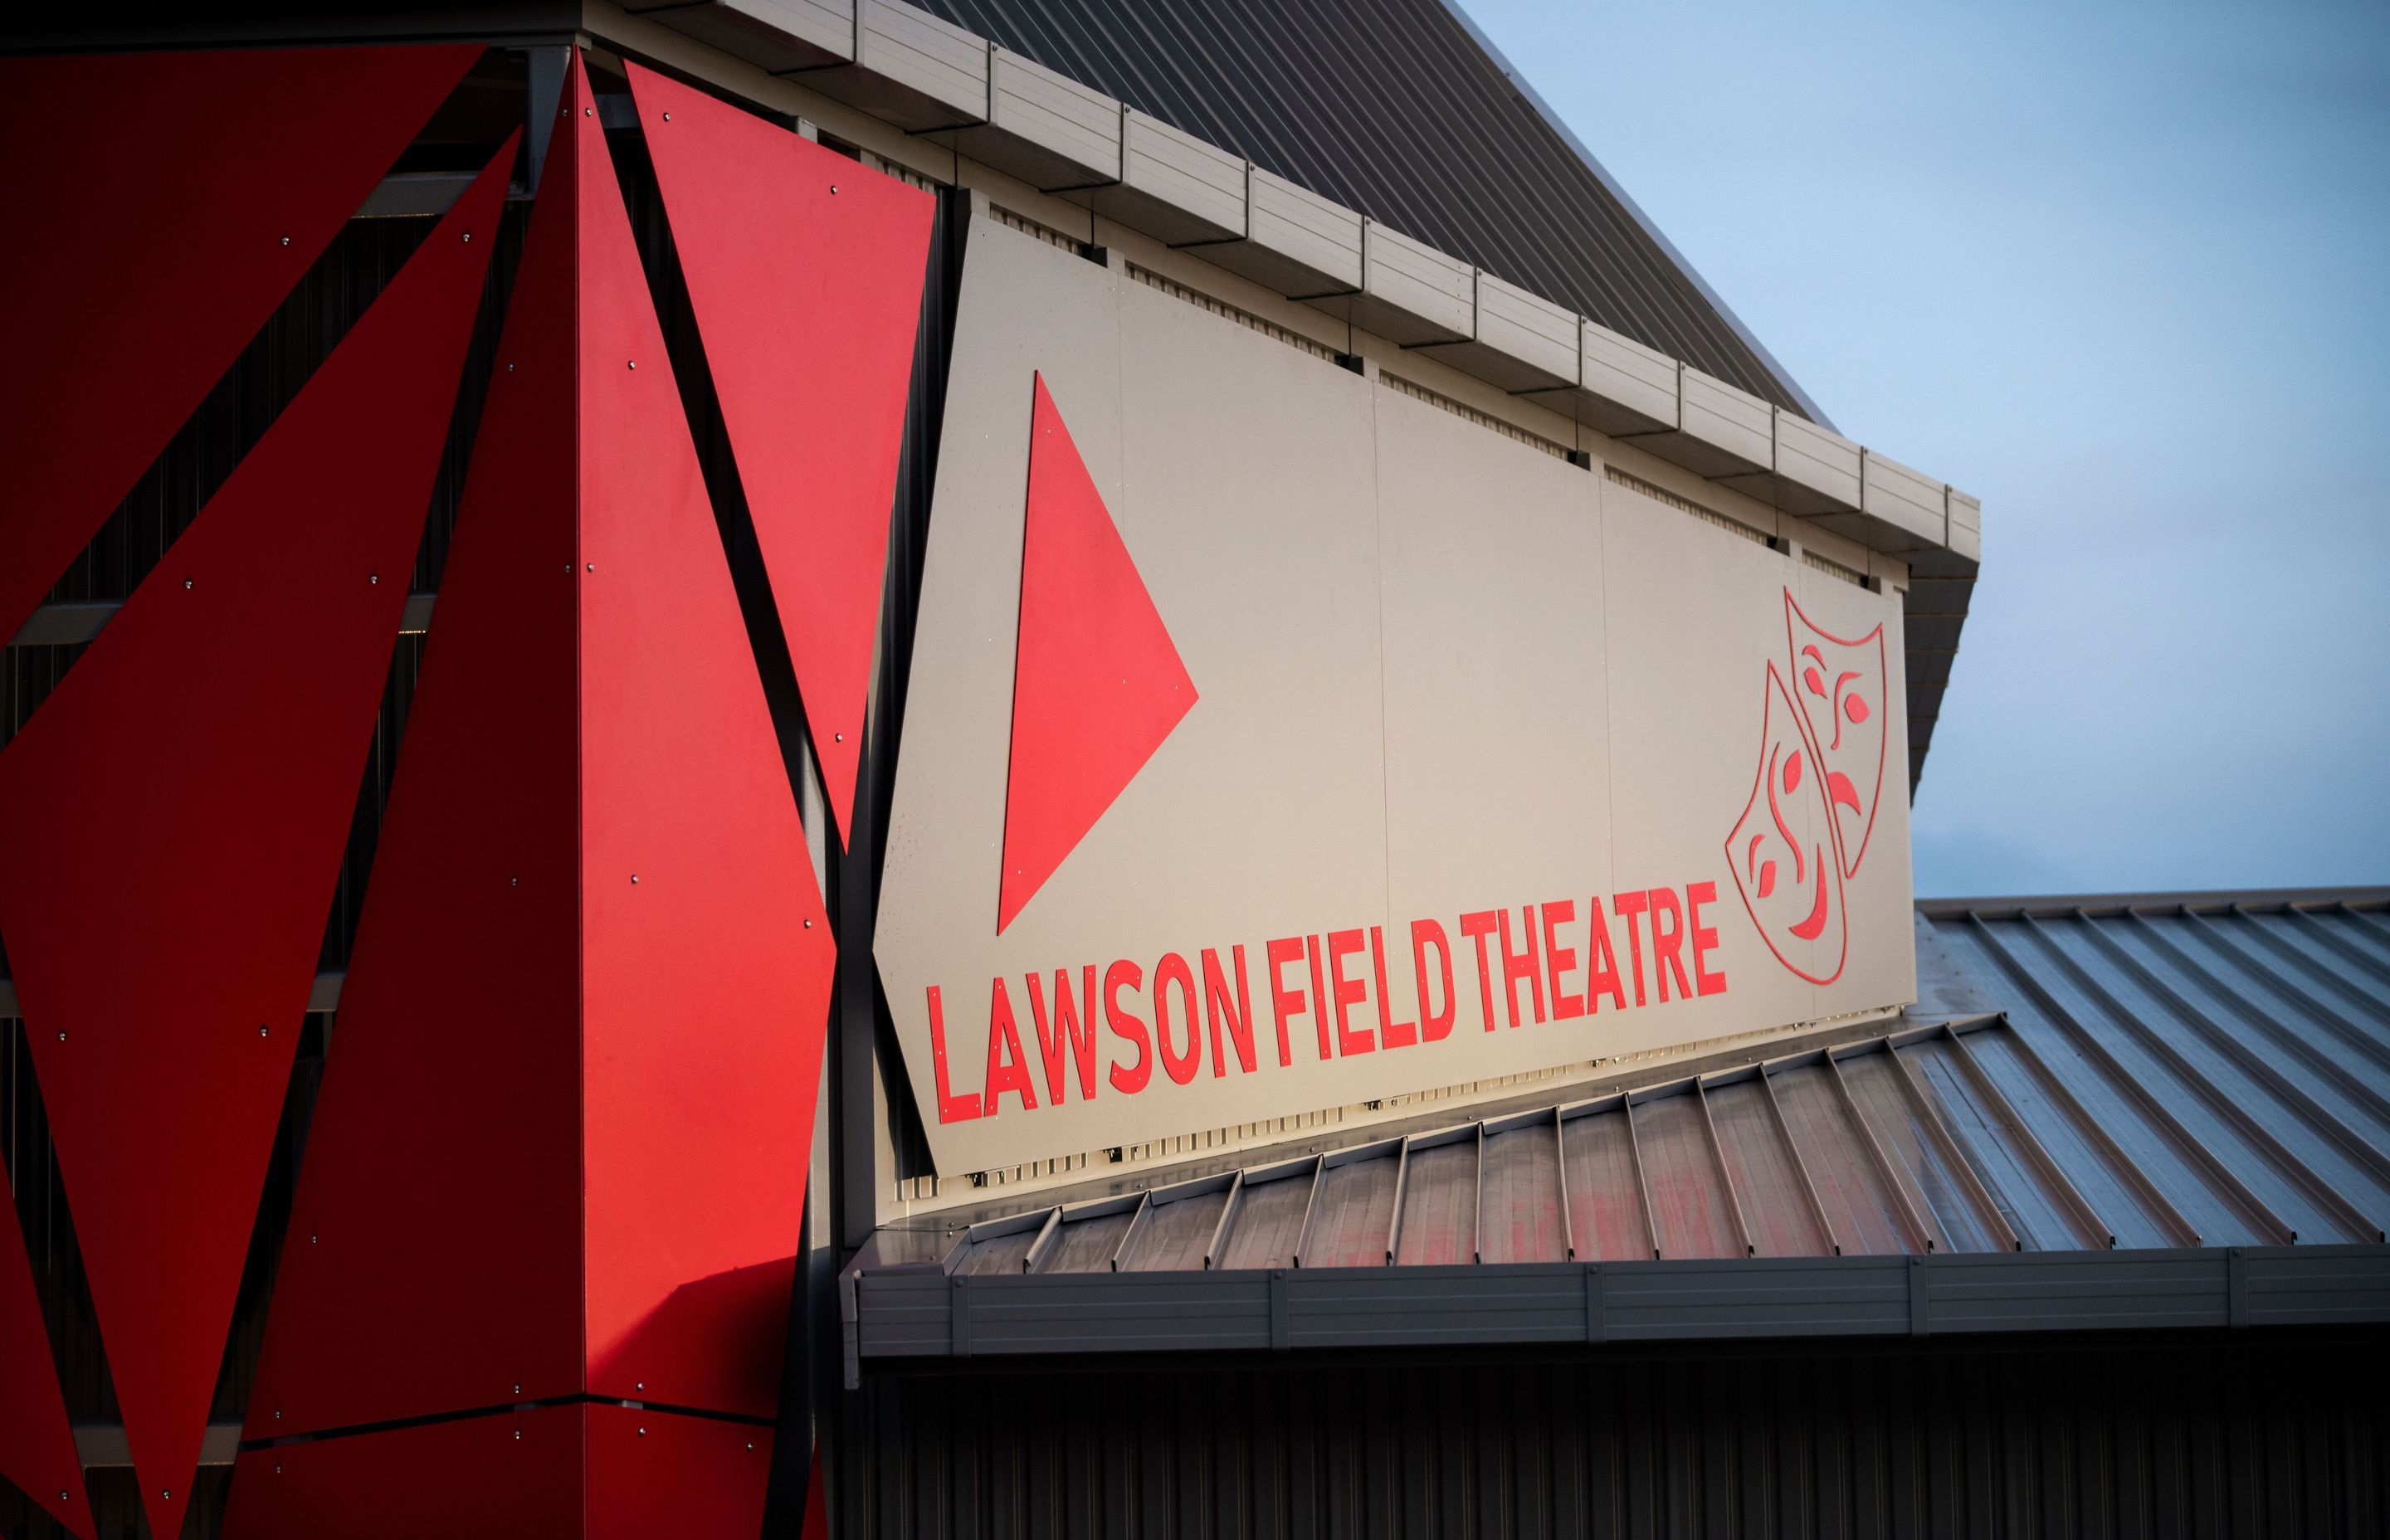 Lawson Field Theatre